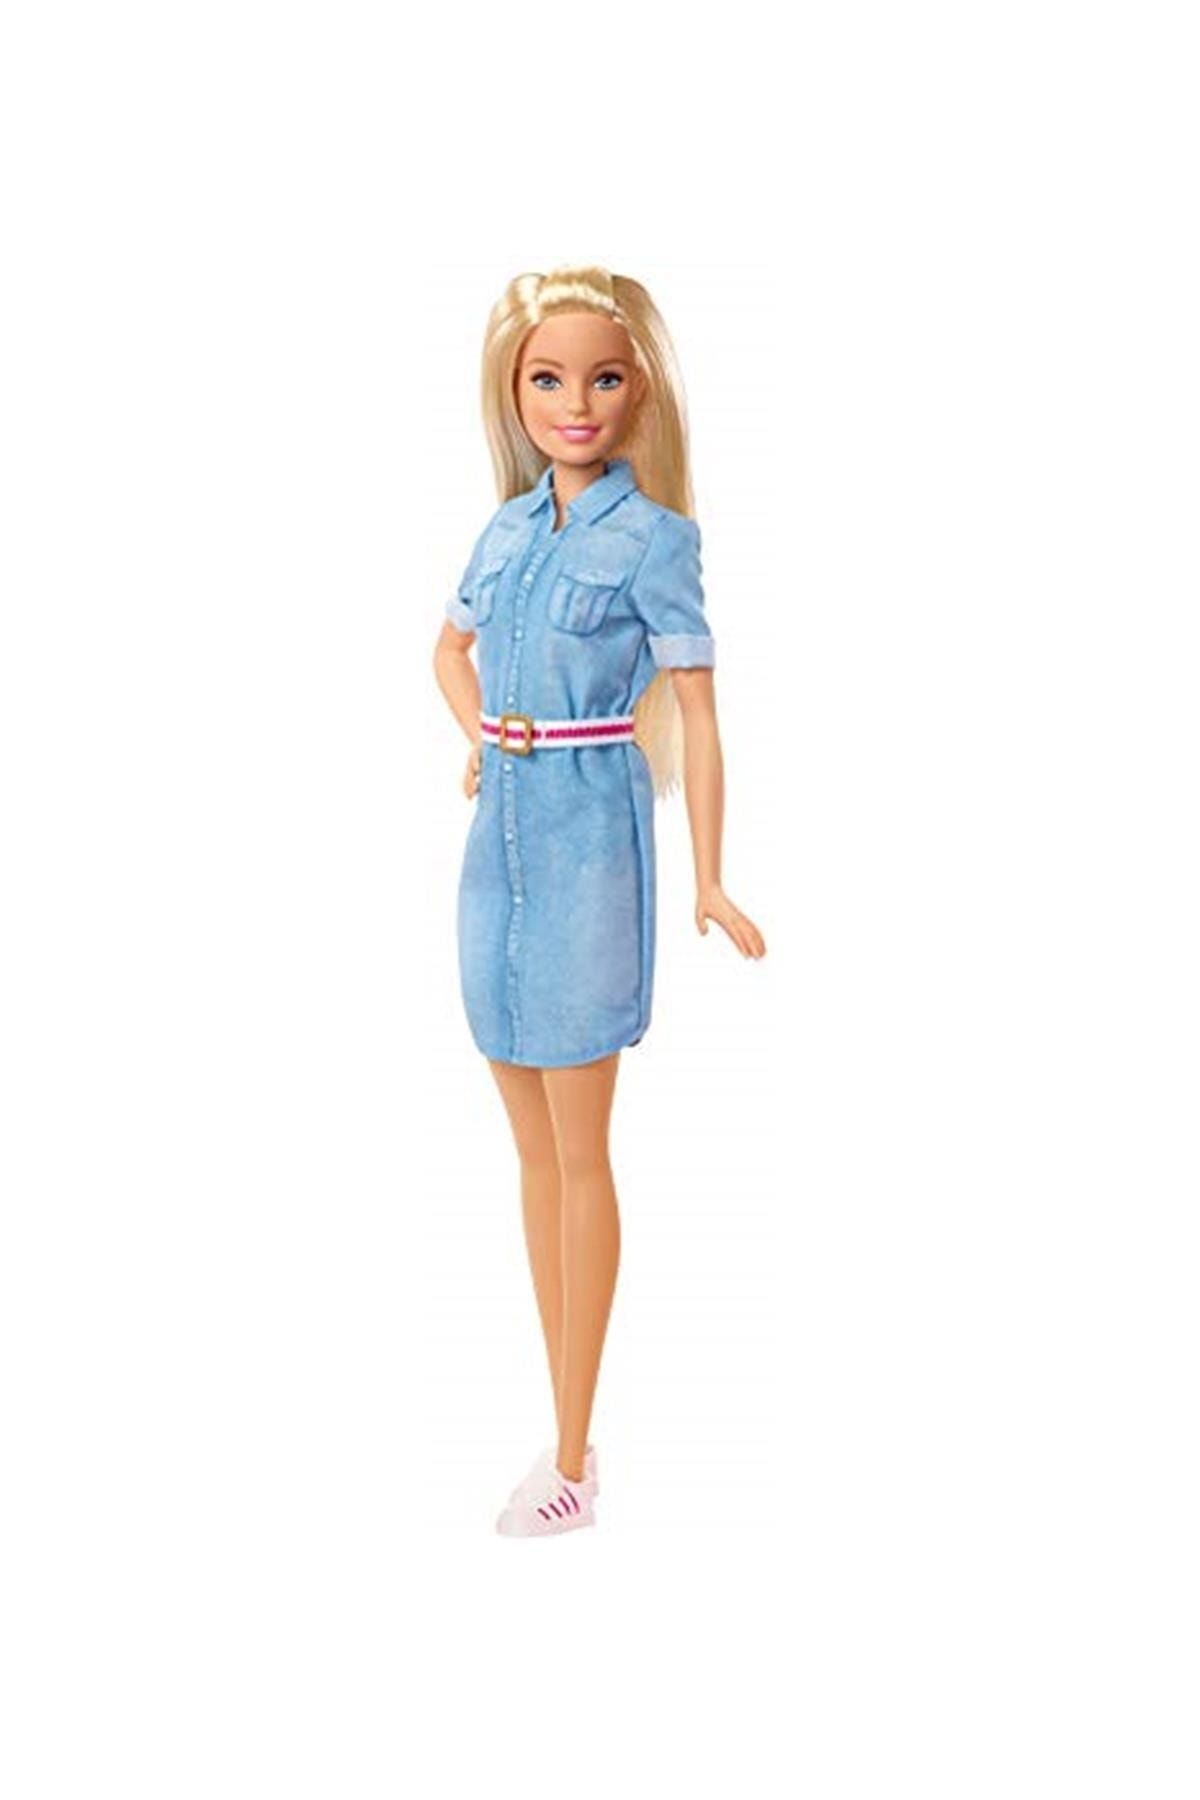 Barbie Ghr58 Seyahatte Bebeği, Rüya Evi Maceraları Bebek, 30 Cm Boyunda, Sarışın, Kot Gömlek